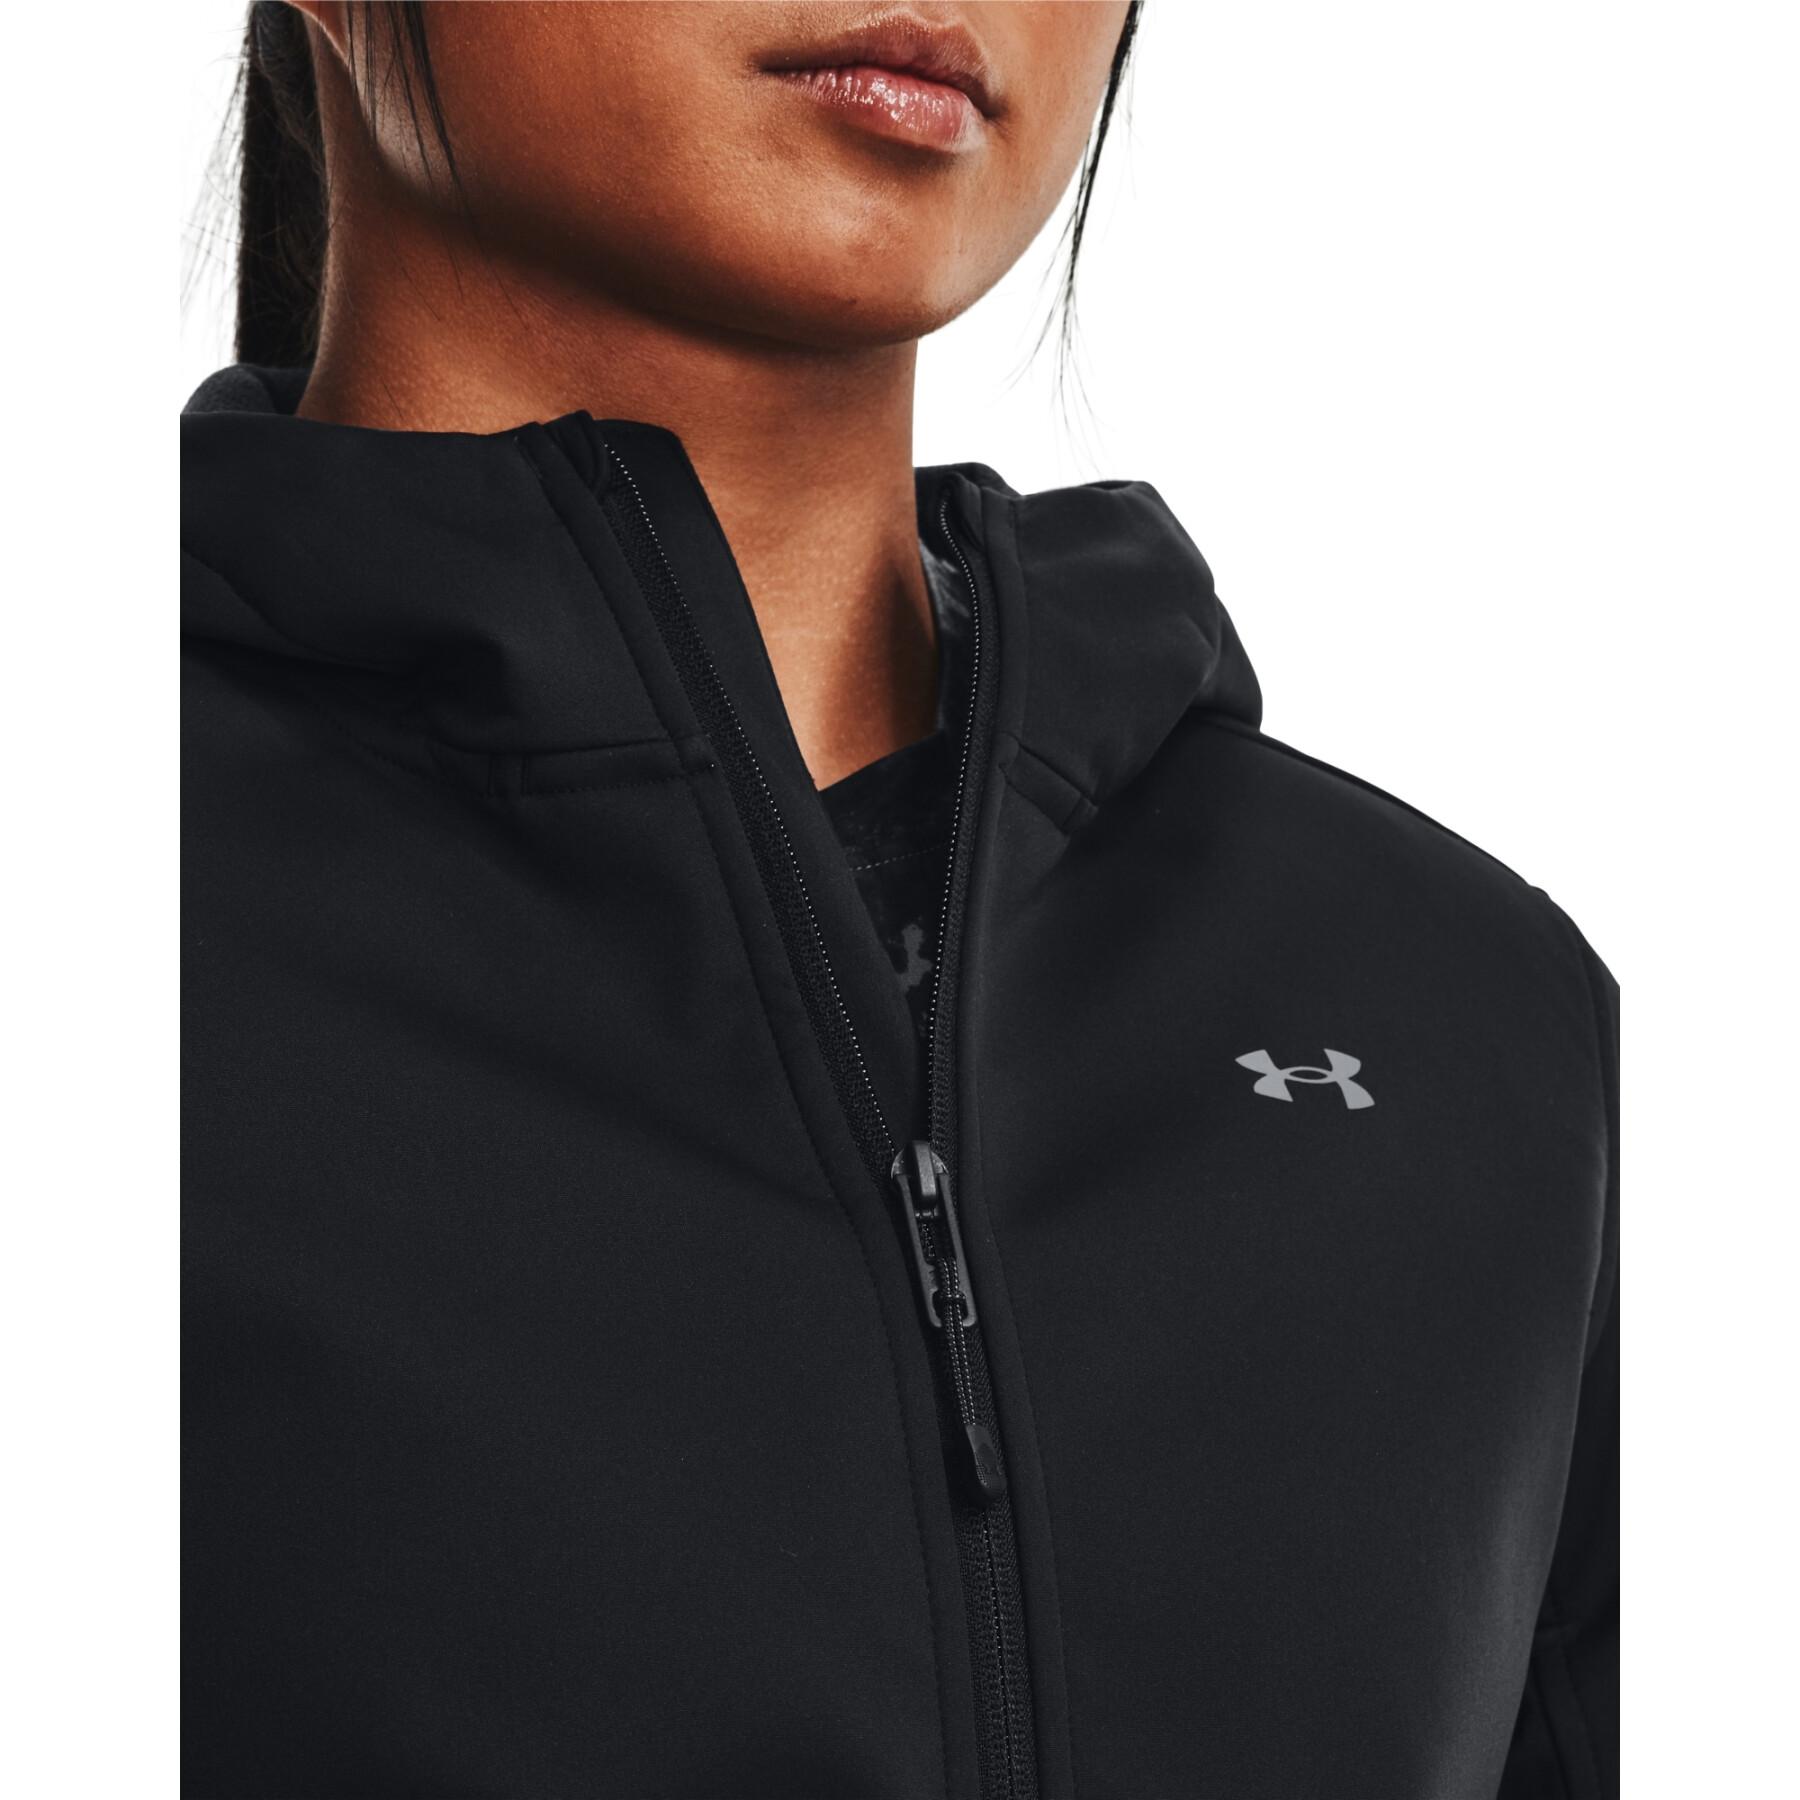 Sweatshirt à capuche femme Under Armour Storm Coldgear® Infrared Shield 2.0